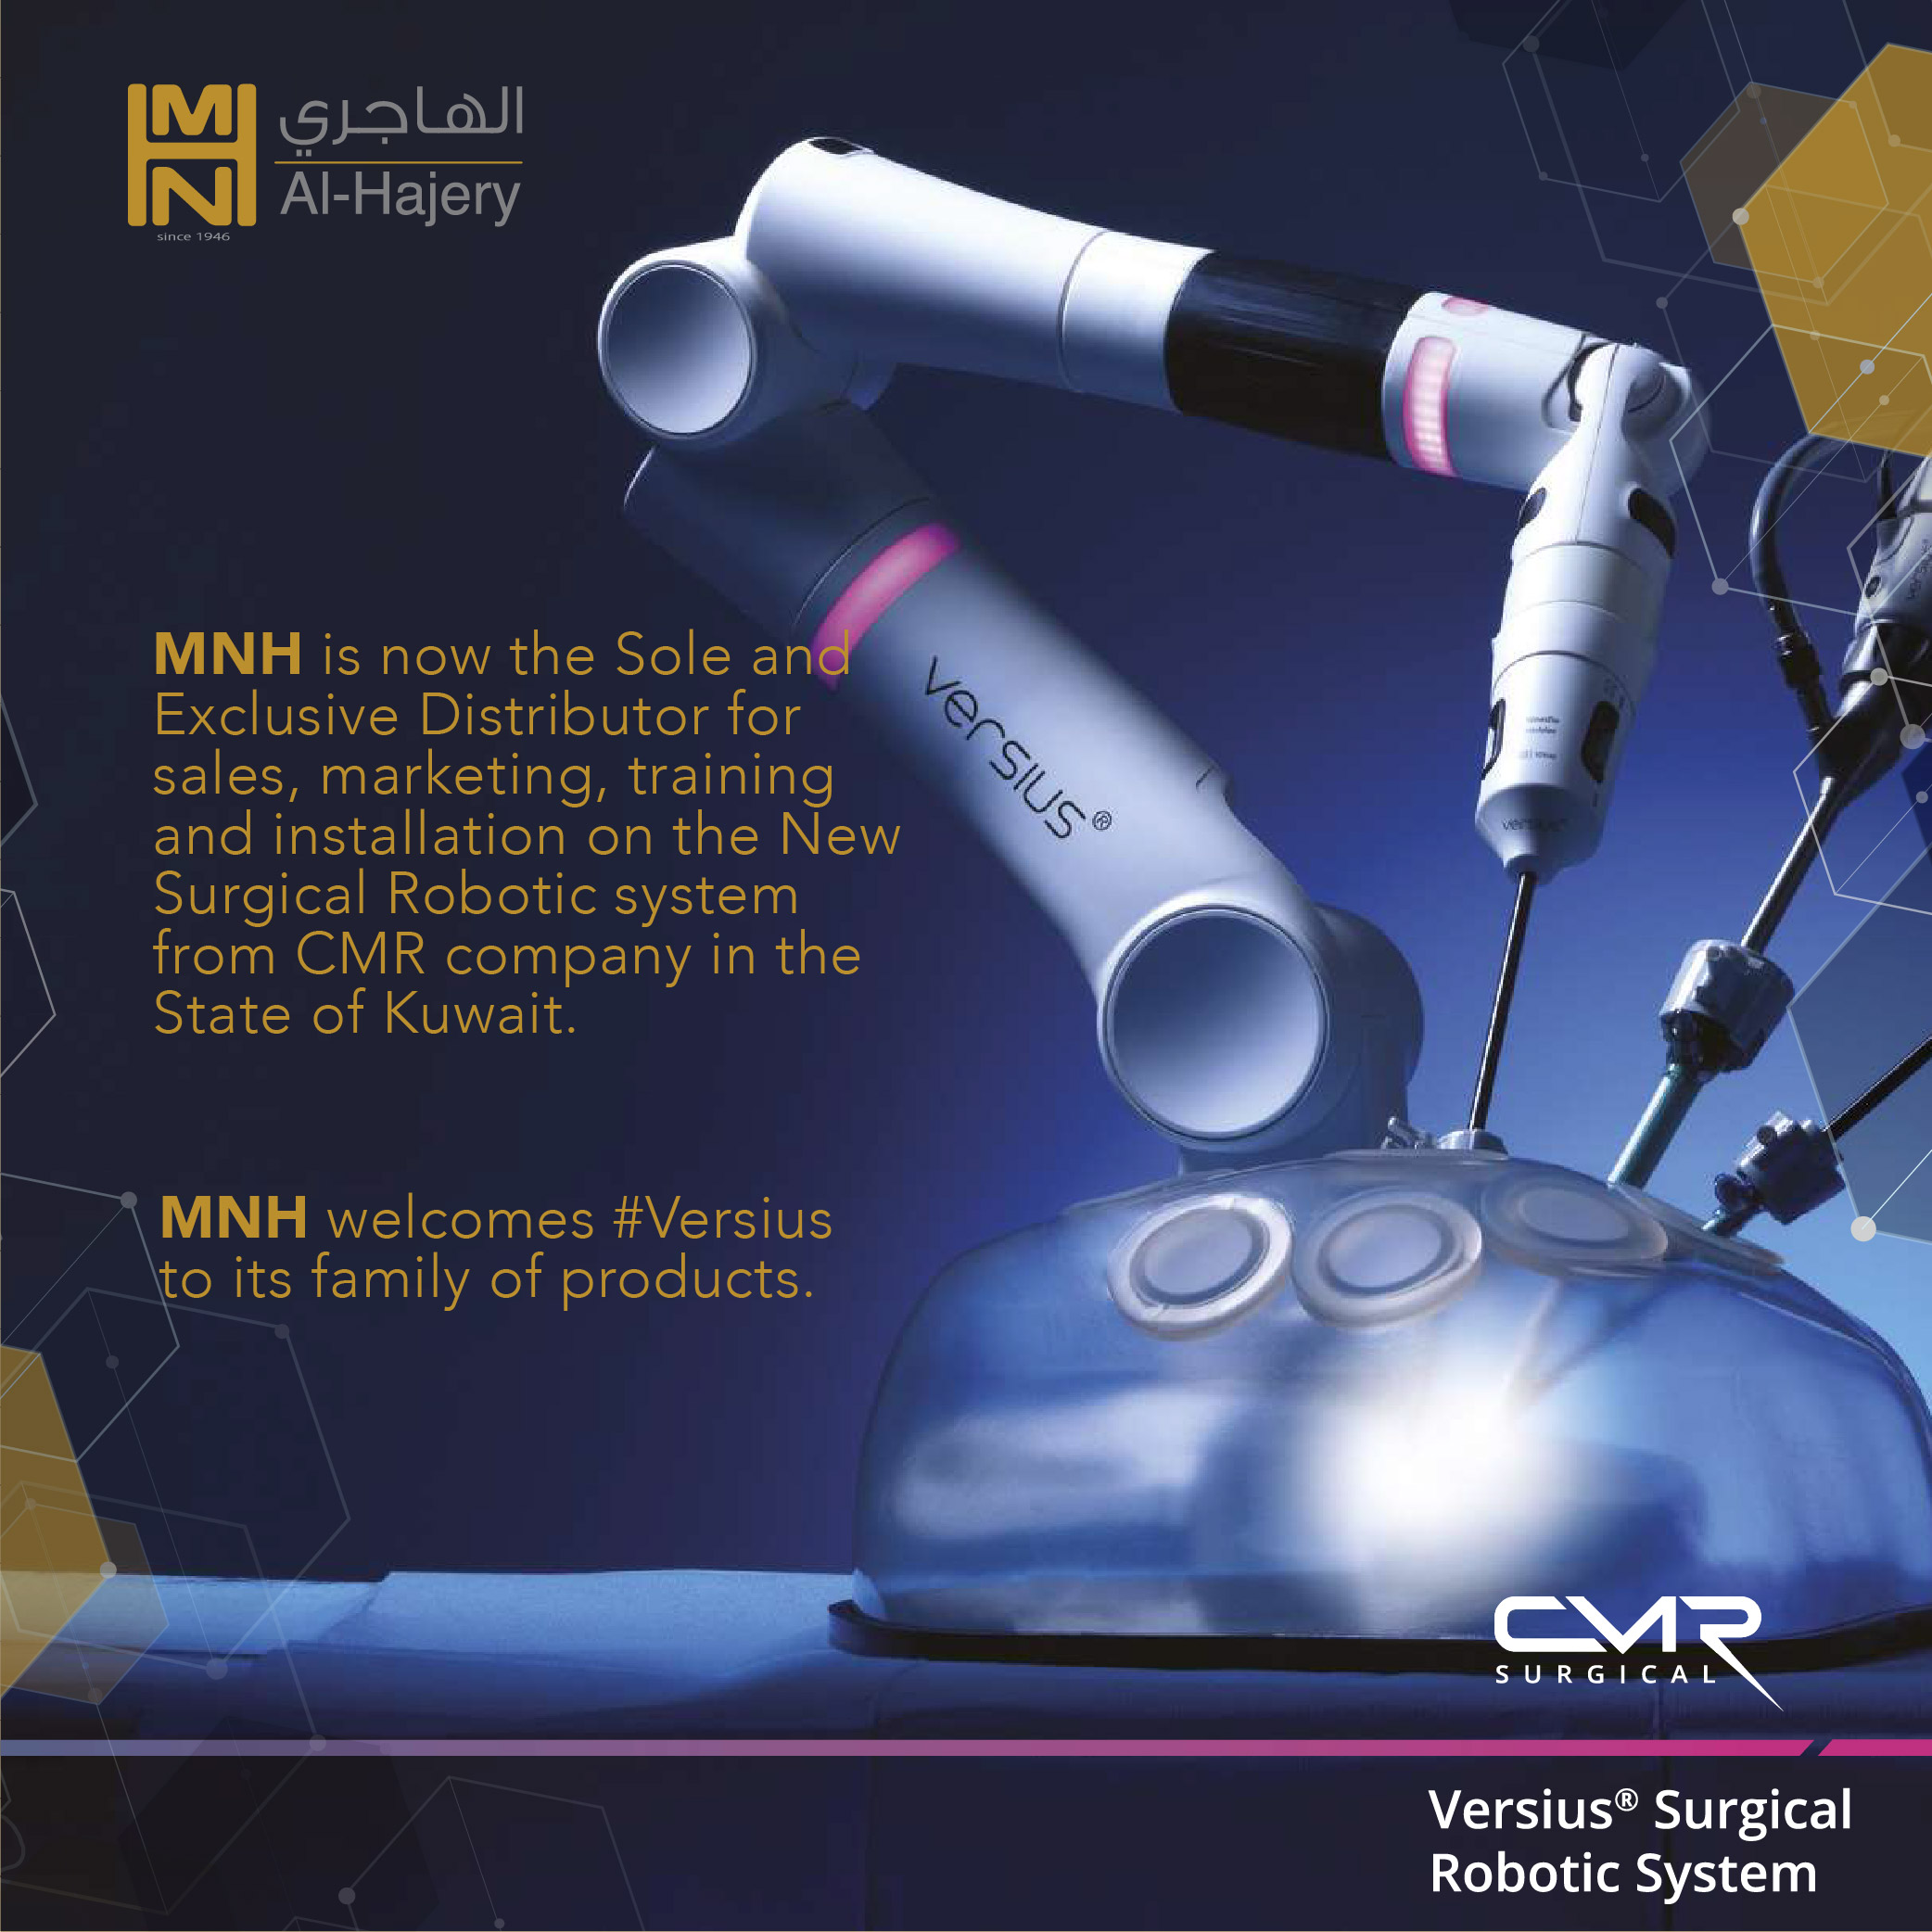 Versius Surgical Robotic System